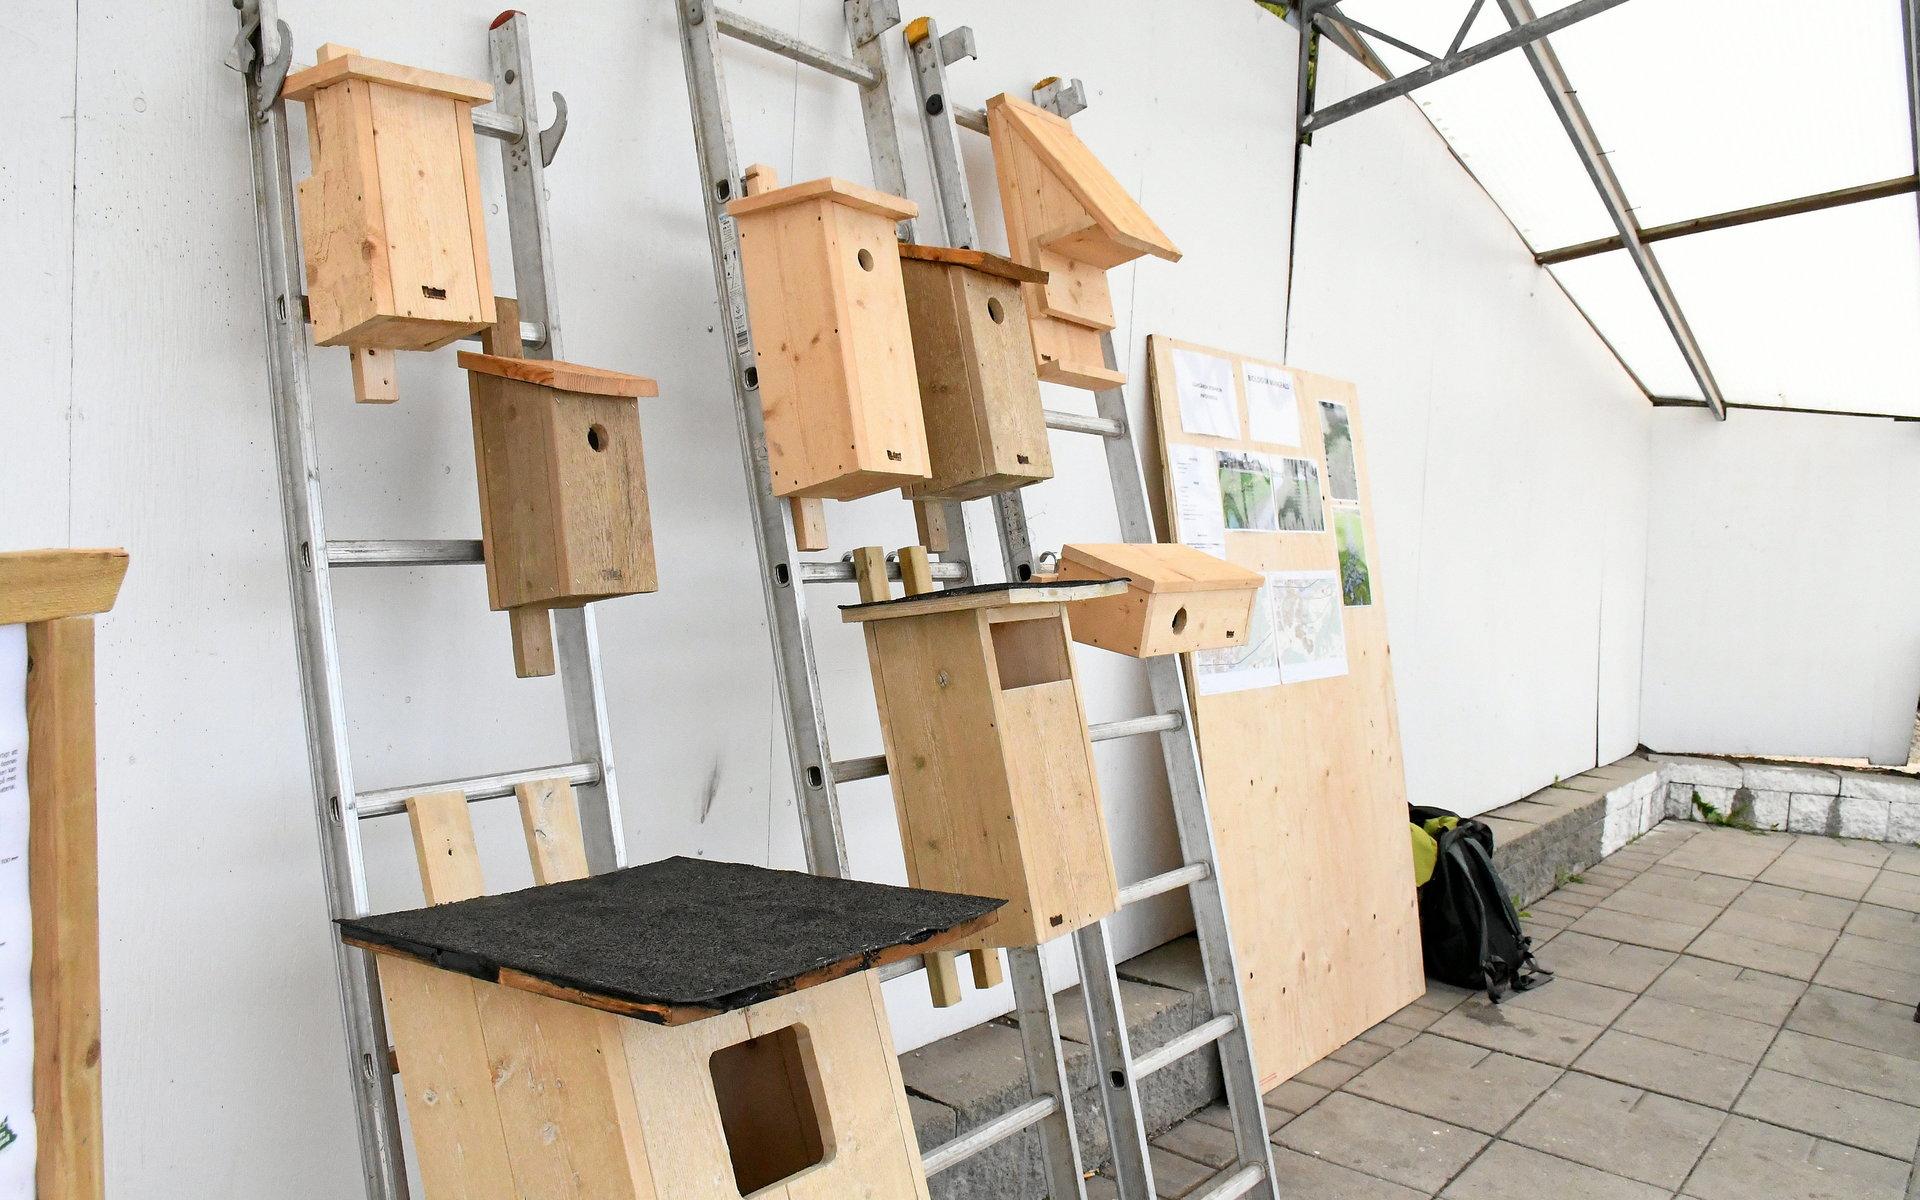 Runt 300 fågelholkar, i olika modeller, har kommunen placerat ut i centrala Vårgårda. Ett sätt att gynna den biologiska mångfalden. 